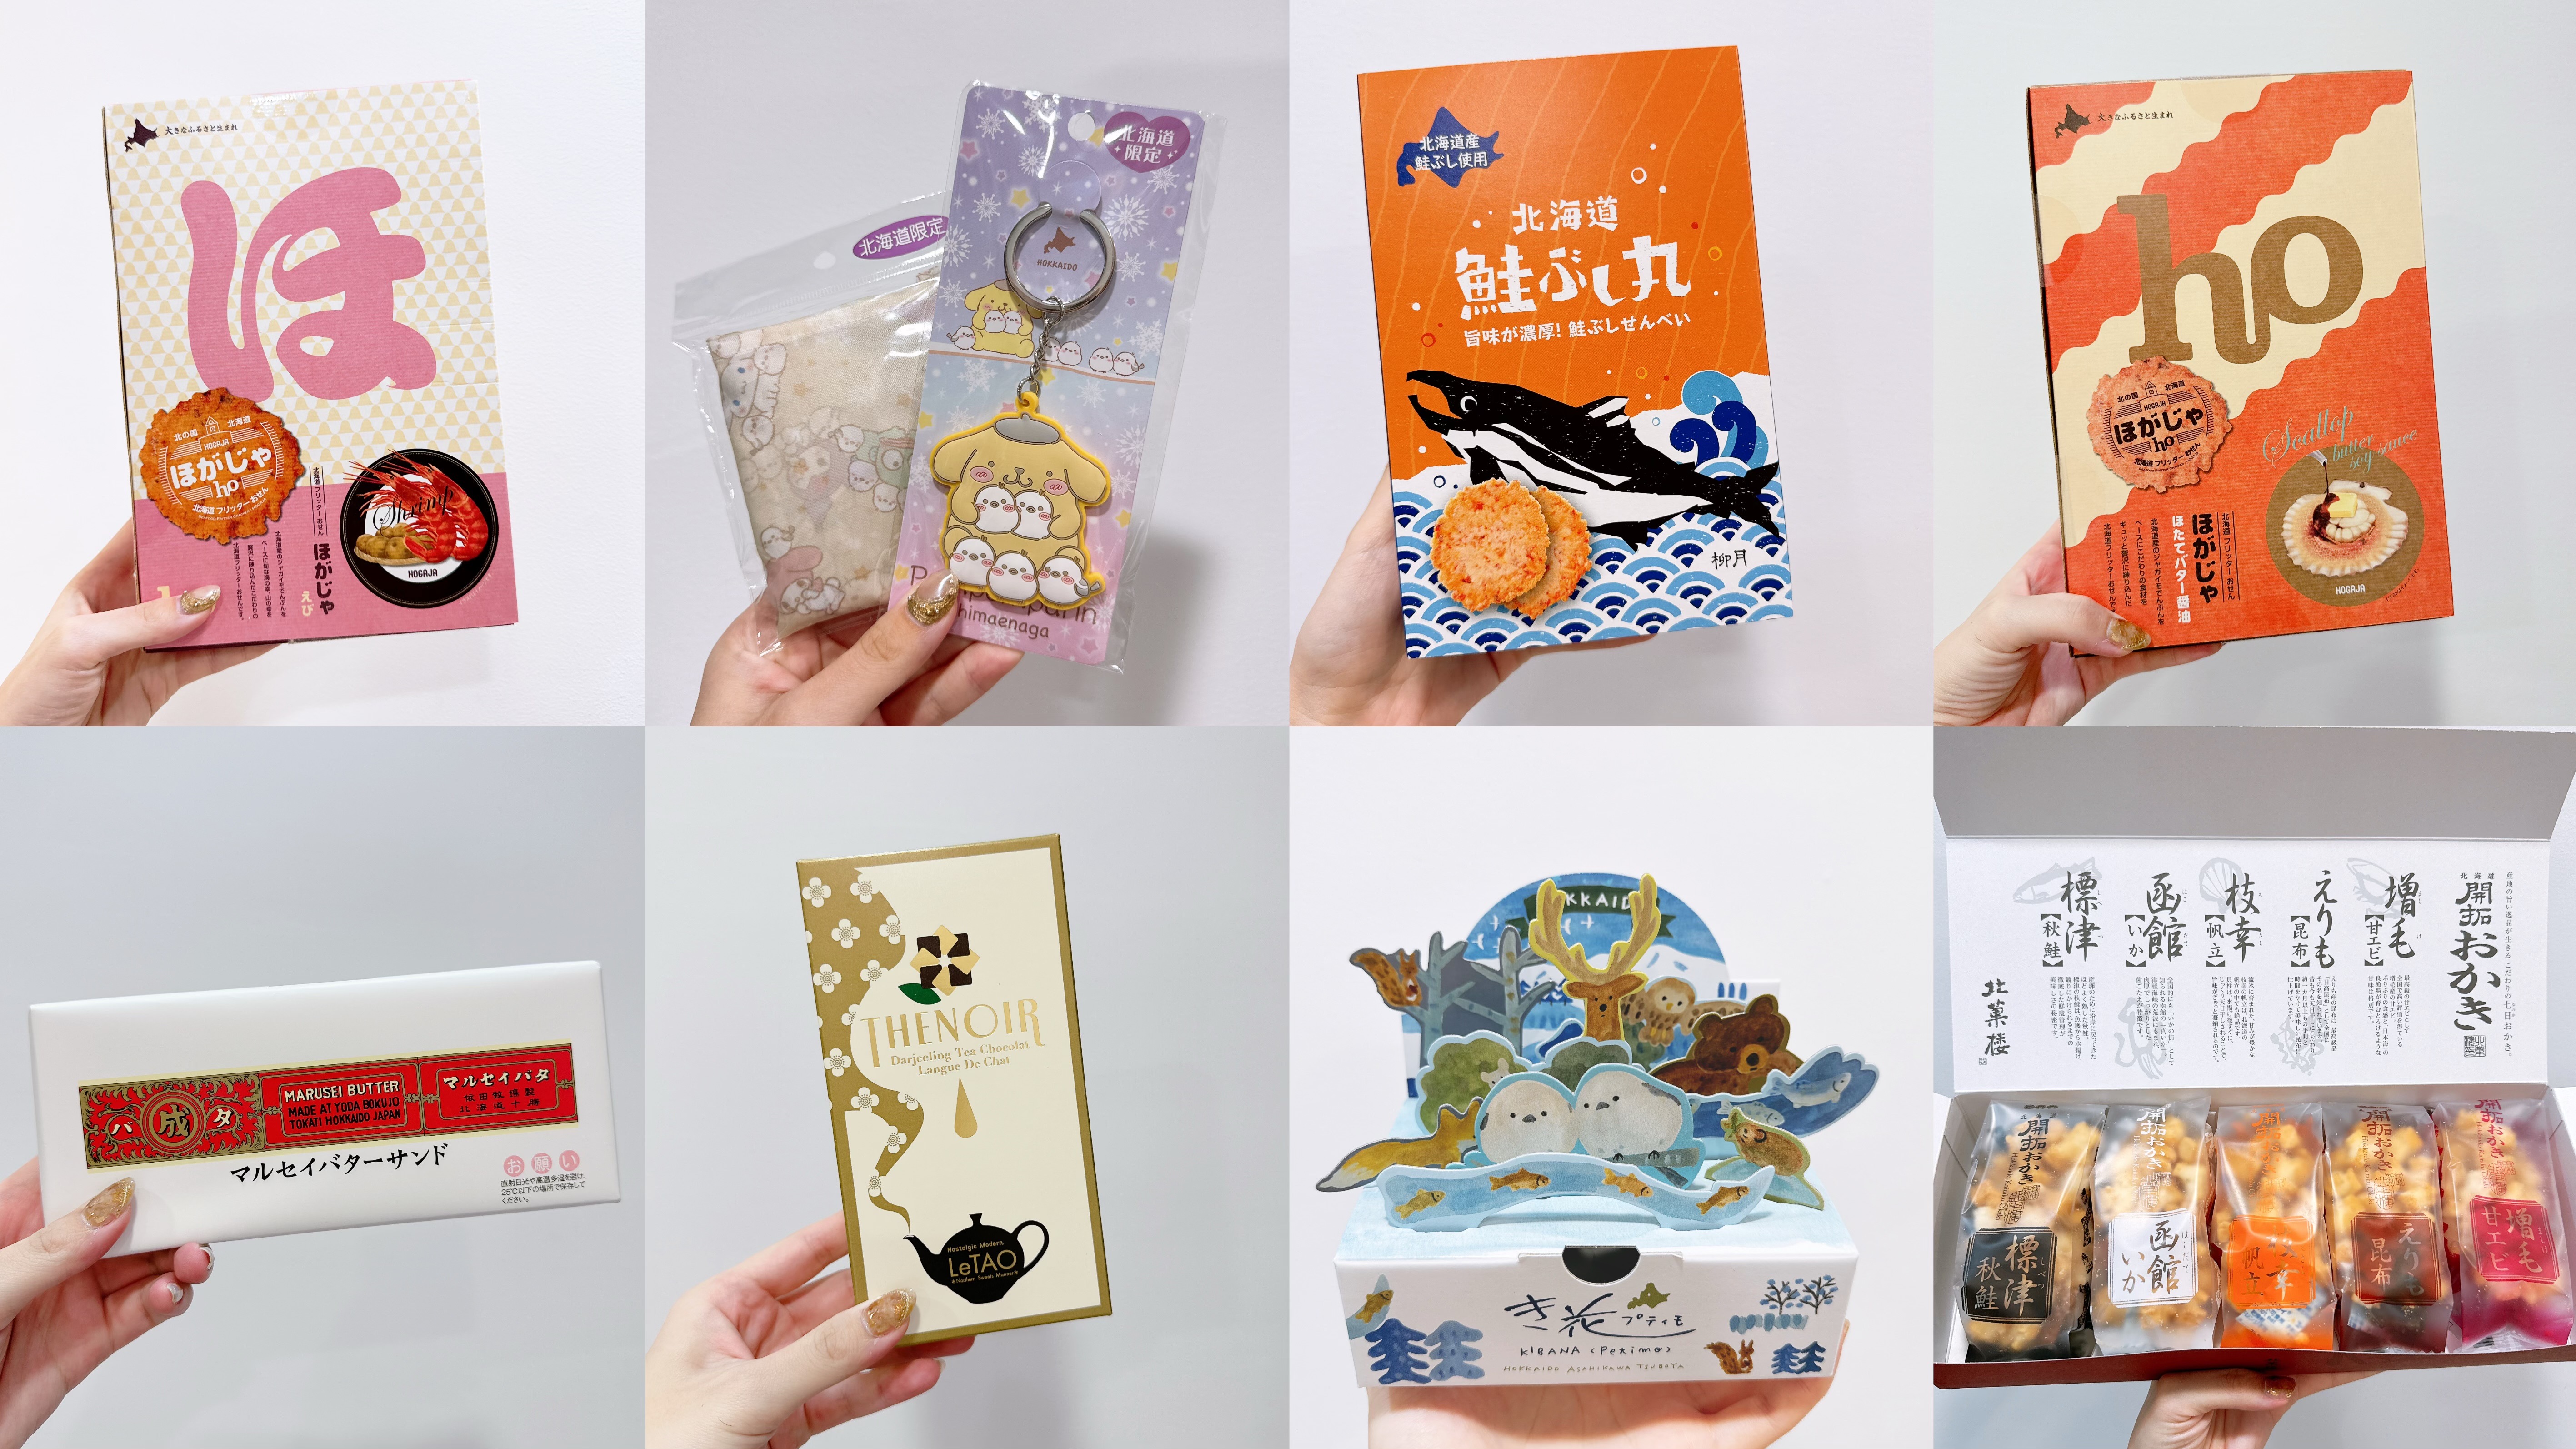 北海道|日本北海道25項伴手禮推薦分享 LeTao、六花亭、北菓樓、柳月 真心話食記